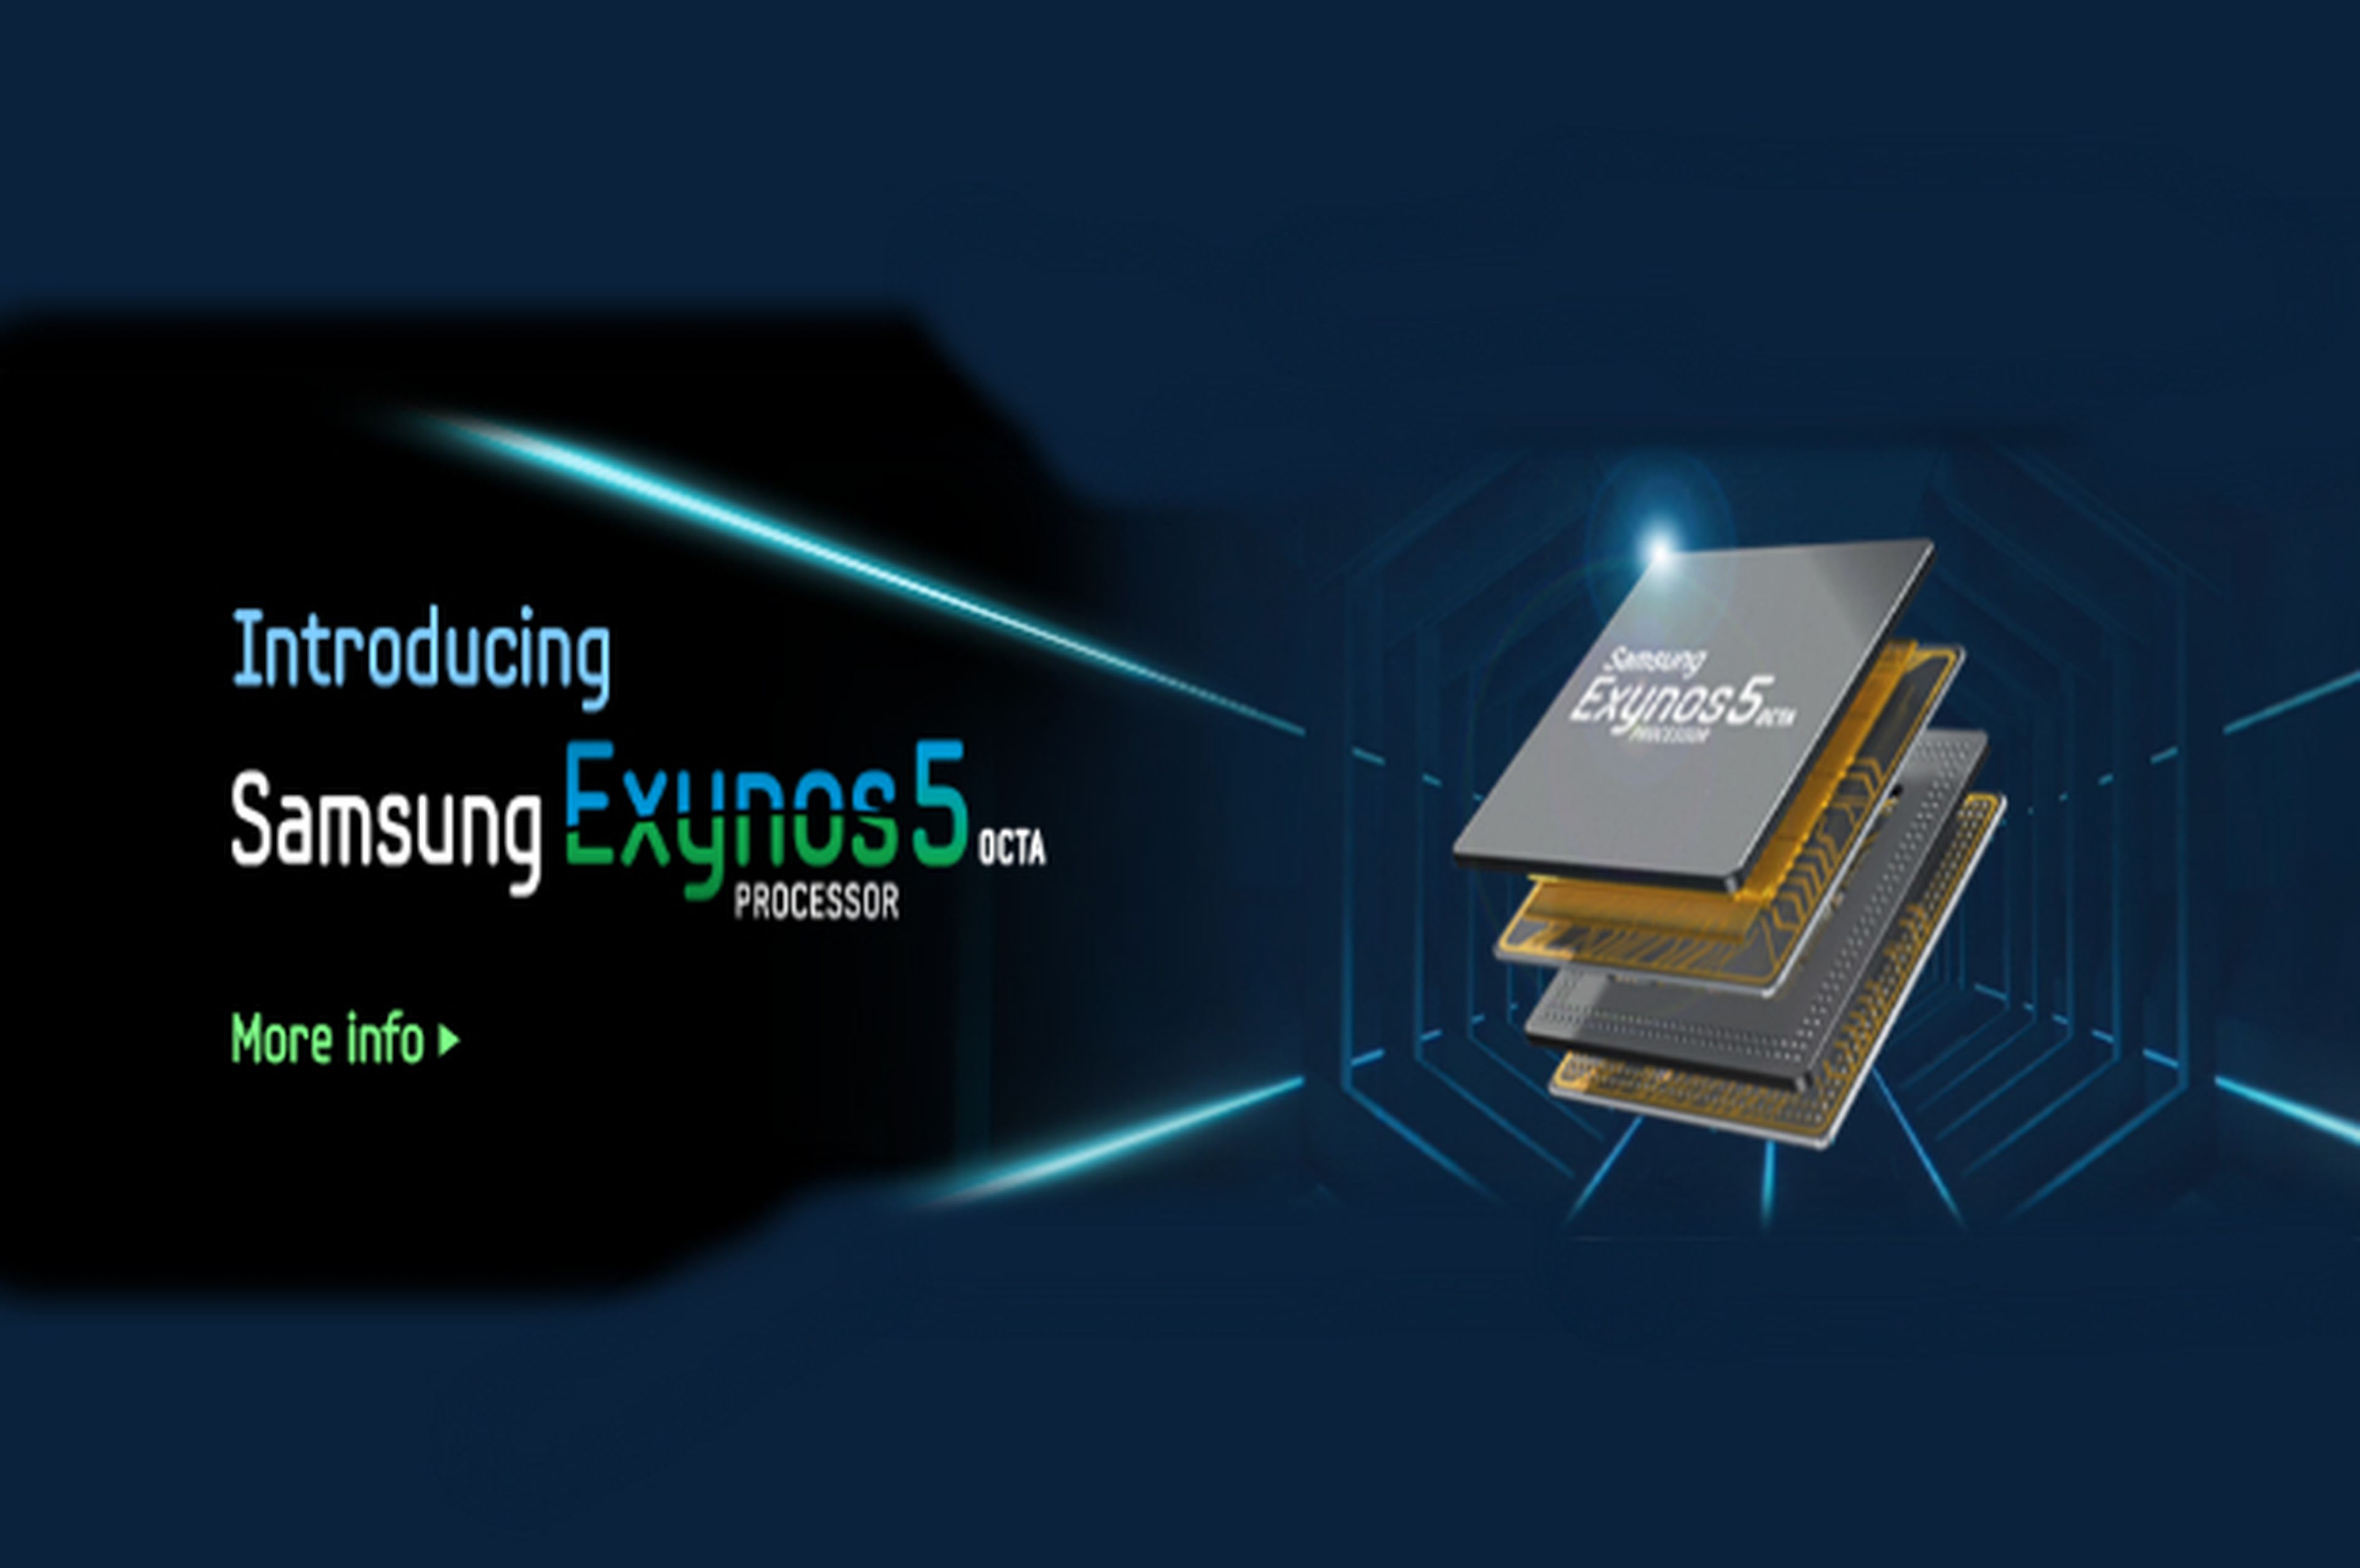 El nuevo procesador de Samsung, confirmado